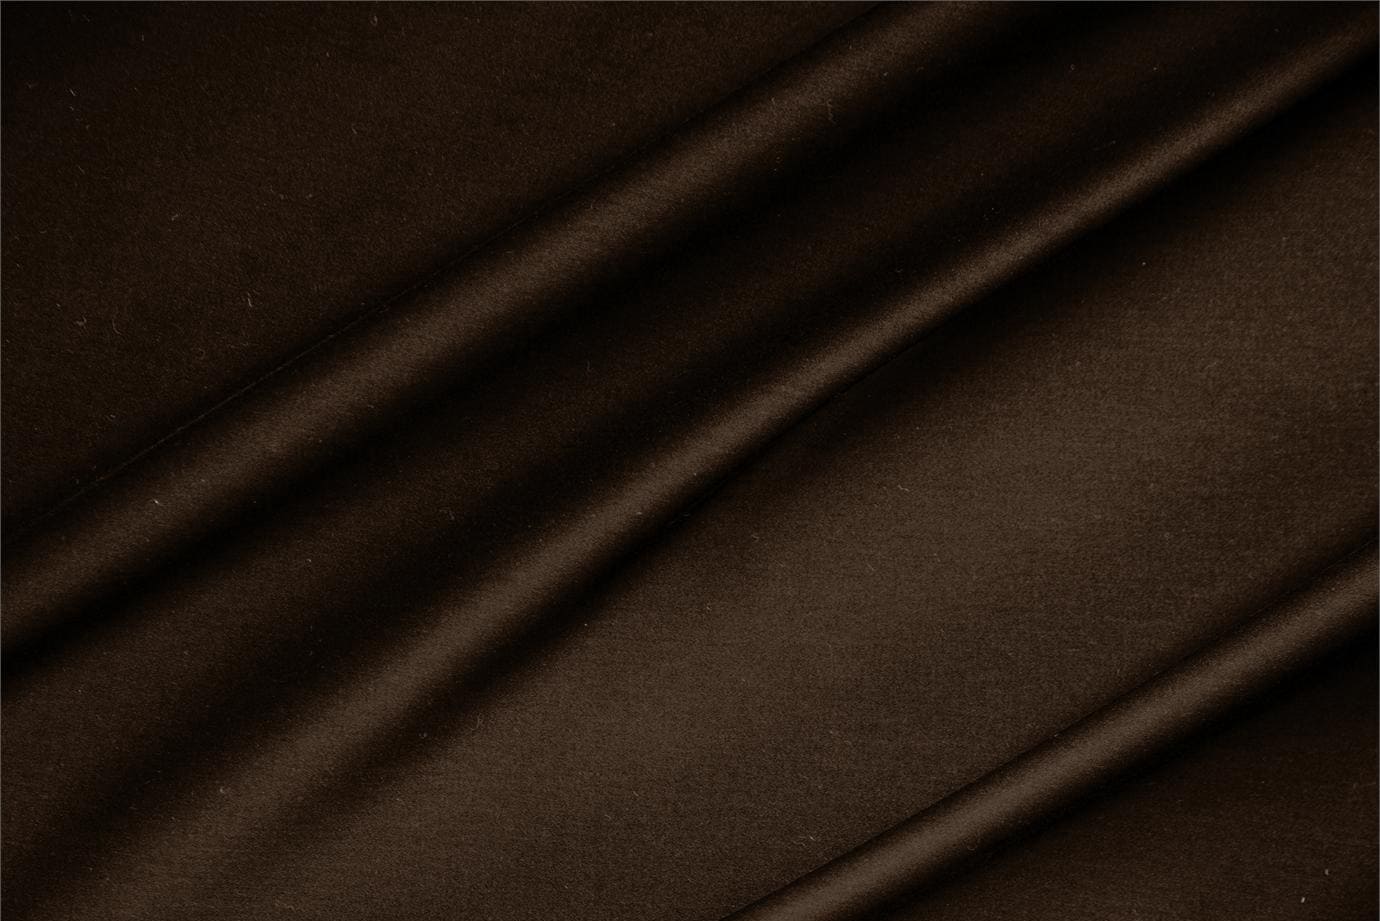 Dark Brown Cotton, Stretch Lightweight cotton sateen stretch fabric for dressmaking